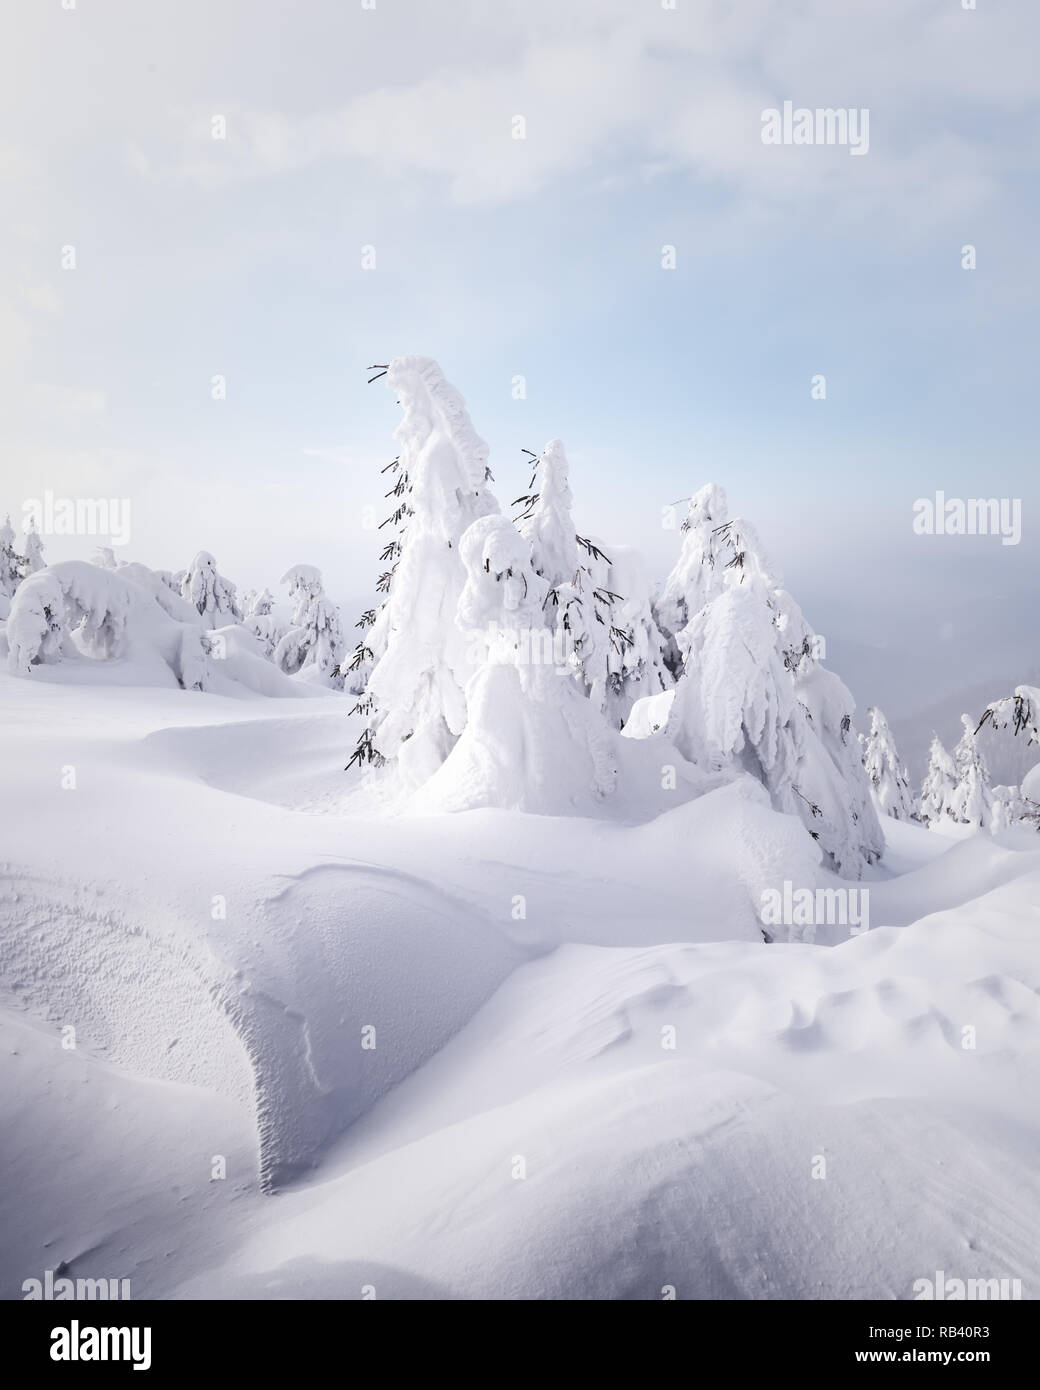 Fantastische Winterlandschaft mit verschneiten Bäumen. Karpaten, Ukraine, Europa. Weihnachten Konzept Stockfoto